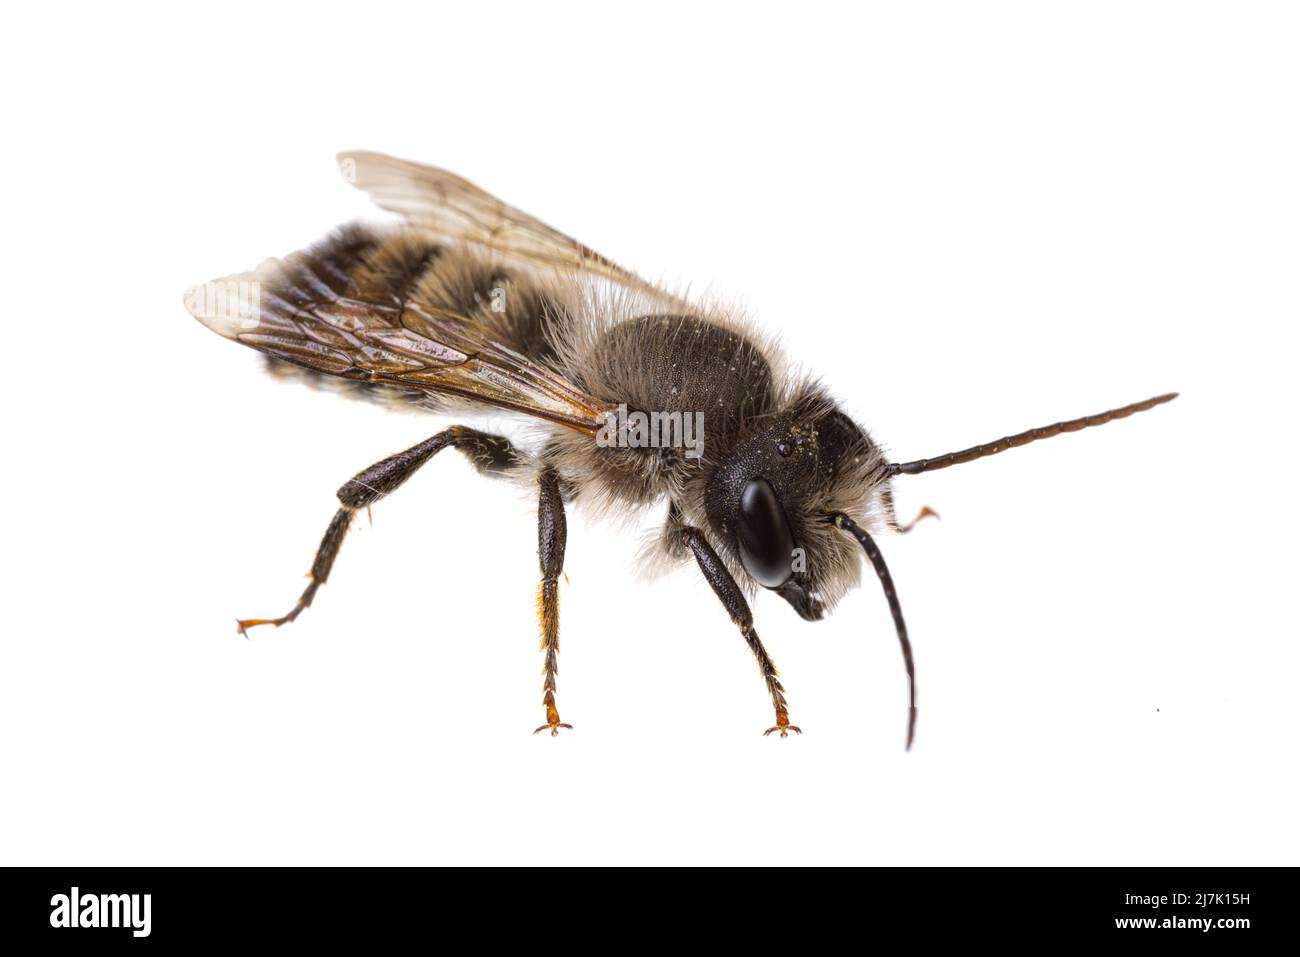 Insetti d'europa - api: Vista laterale del maschio Osmia bicornis rosso Mason ape (tedesco Rote Mauerbiene) isolato su sfondo bianco Foto Stock